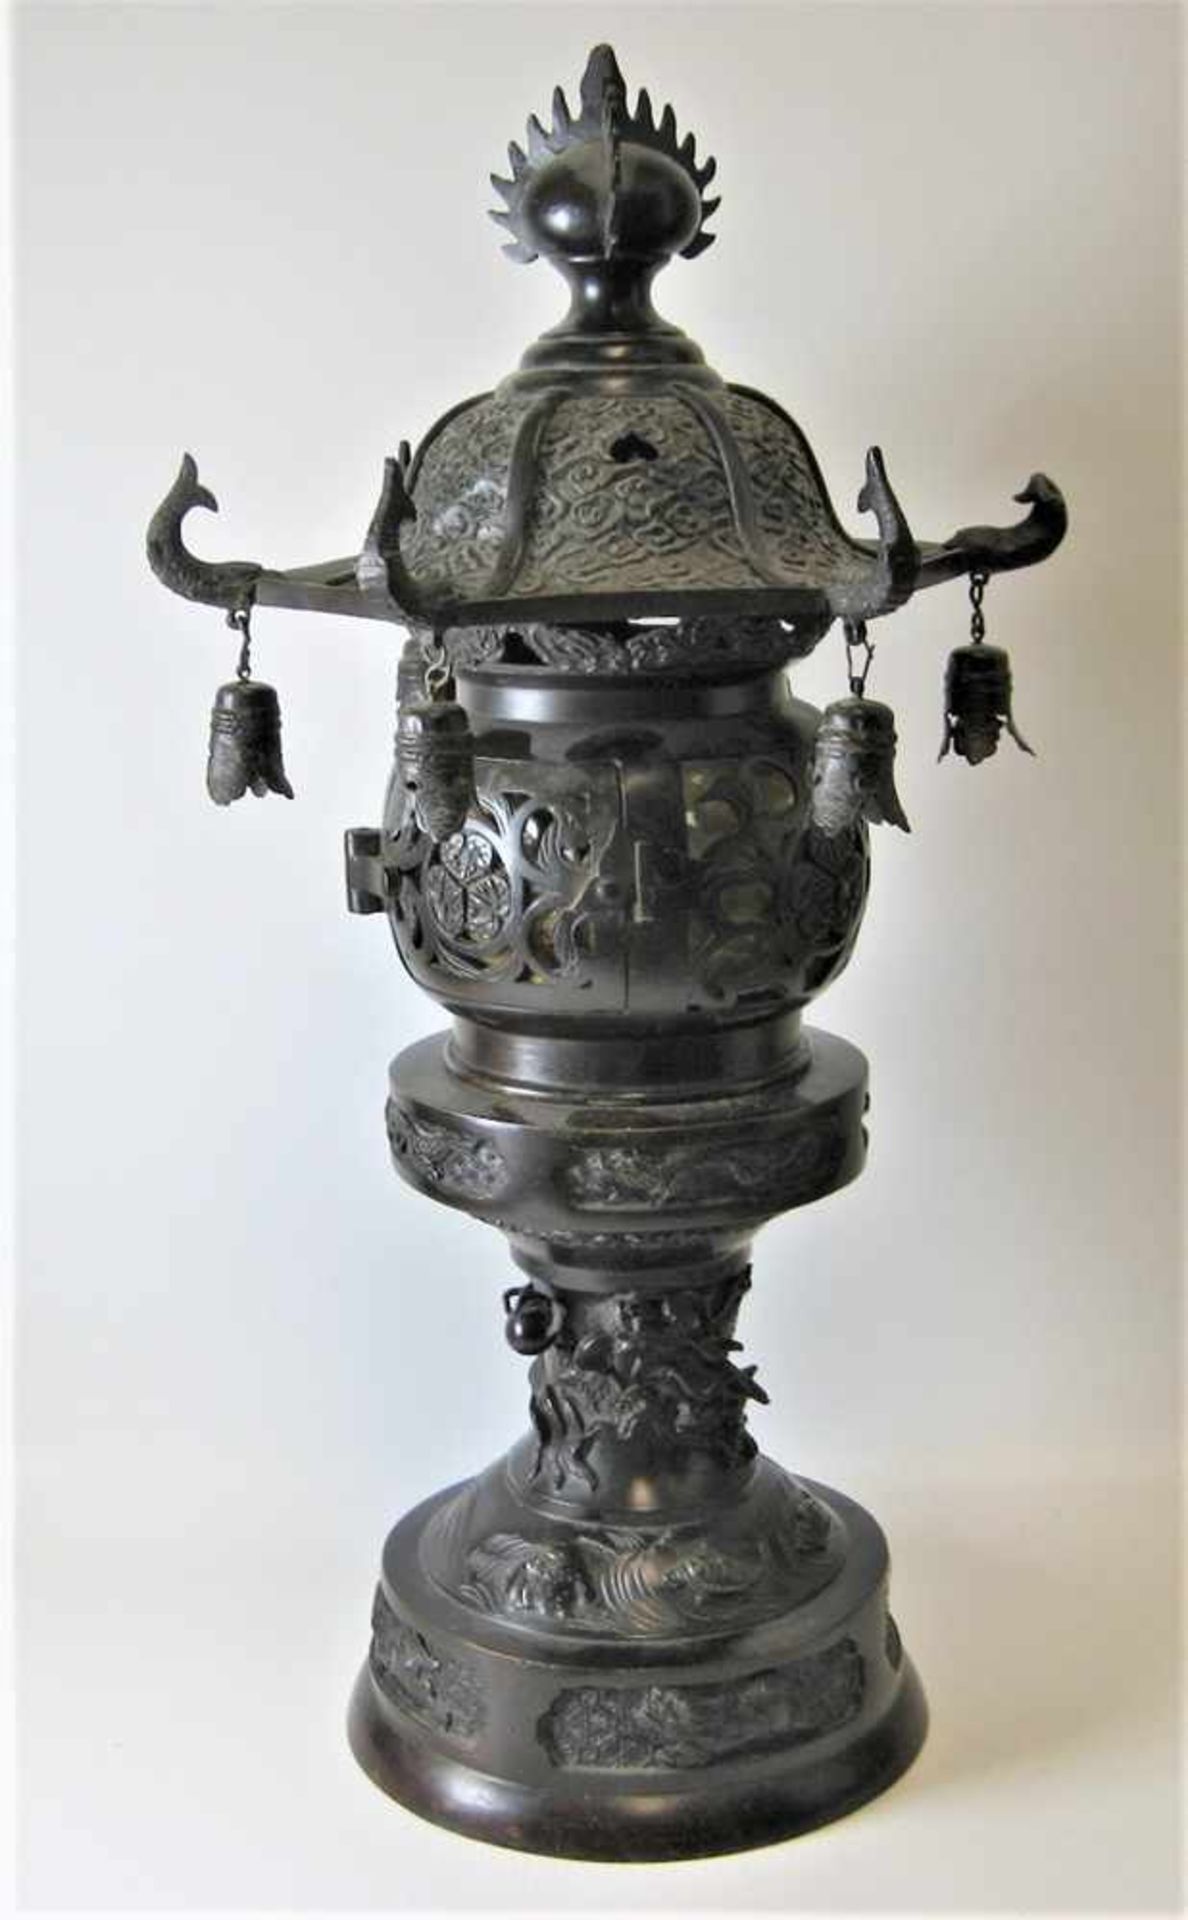 Lampe, China, um 1900, Bronze reich verziert, h 48 cm, d 24,5 cm.- - -19.00 % buyer's premium on the - Bild 2 aus 3